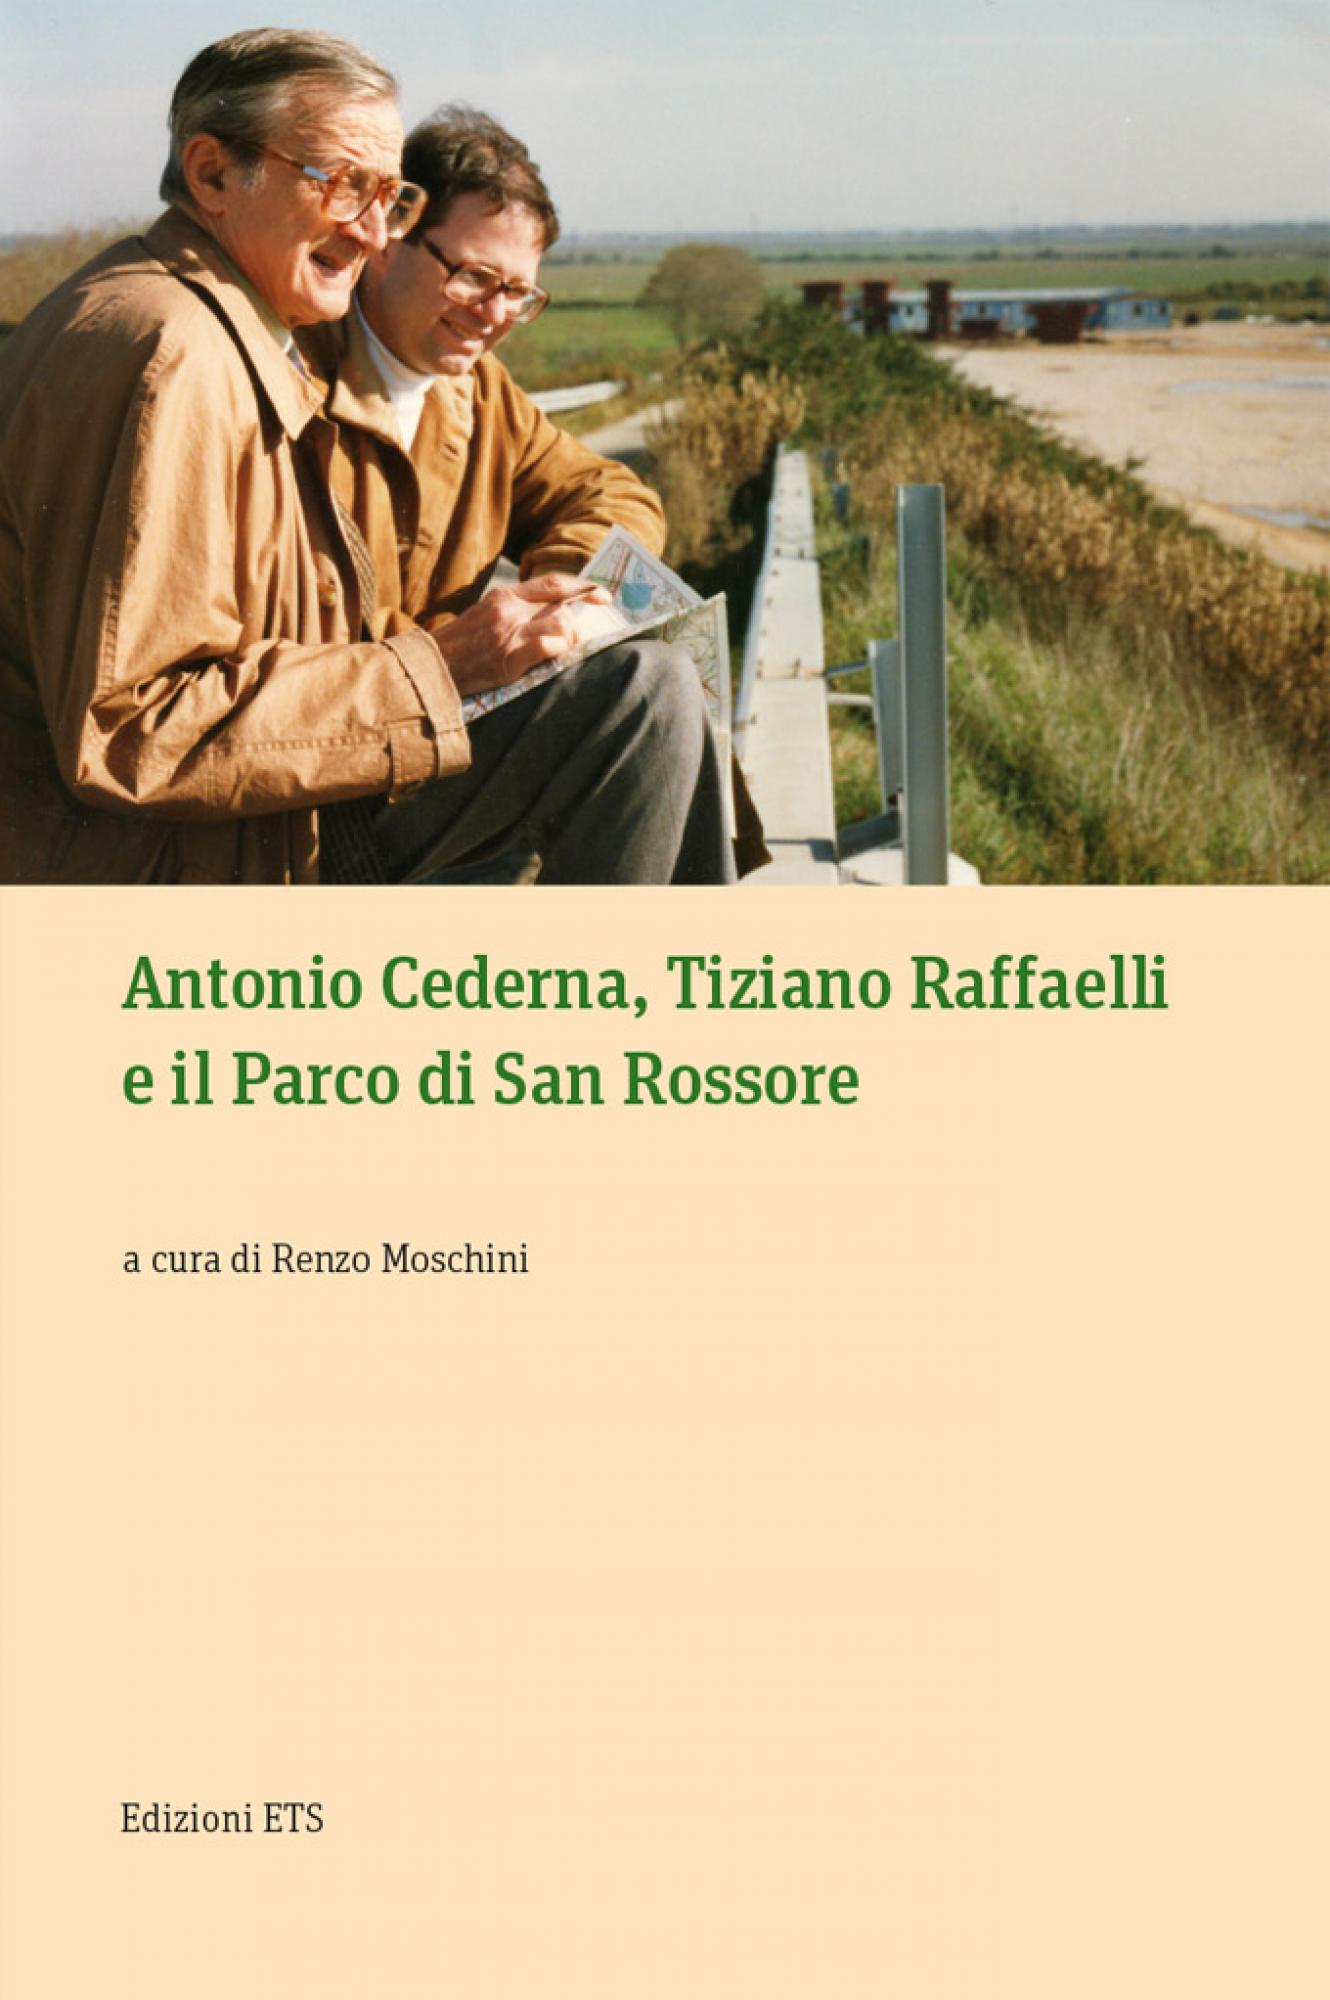 Antonio Cederna, Tiziano Raffaelli e il Parco di San Rossore